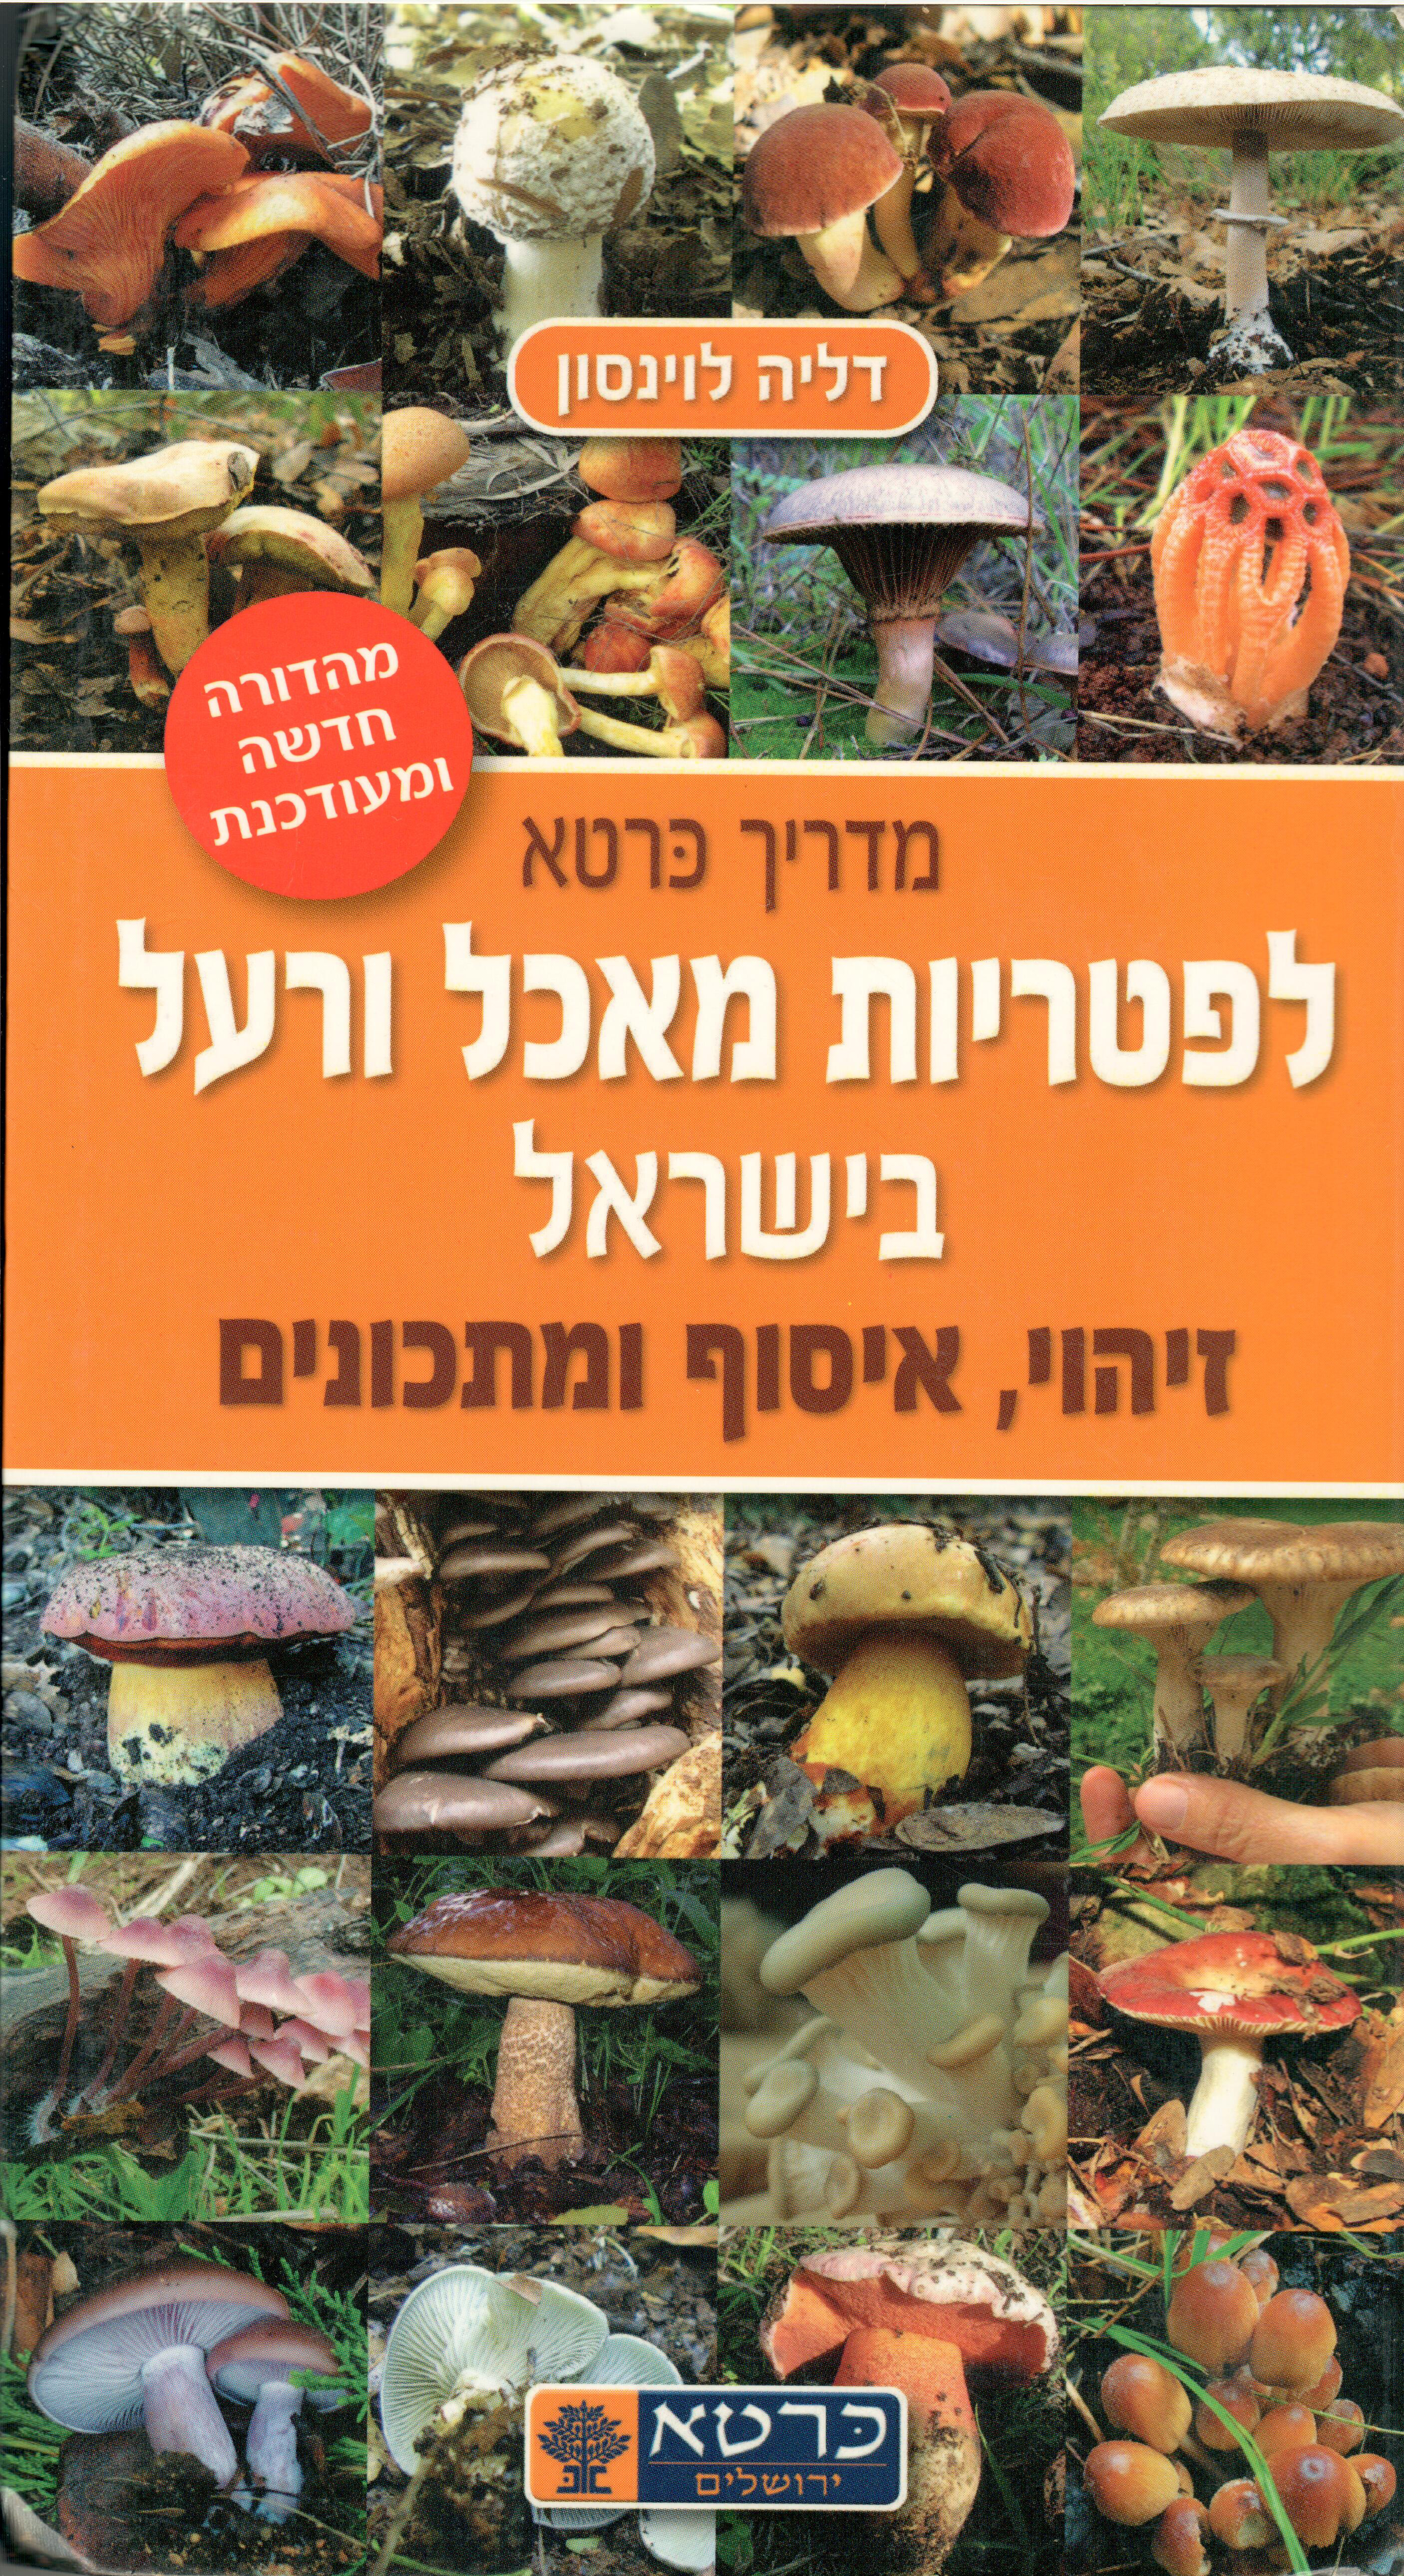 מדריך כרטא לפטריות מאכל ורעל בישראל